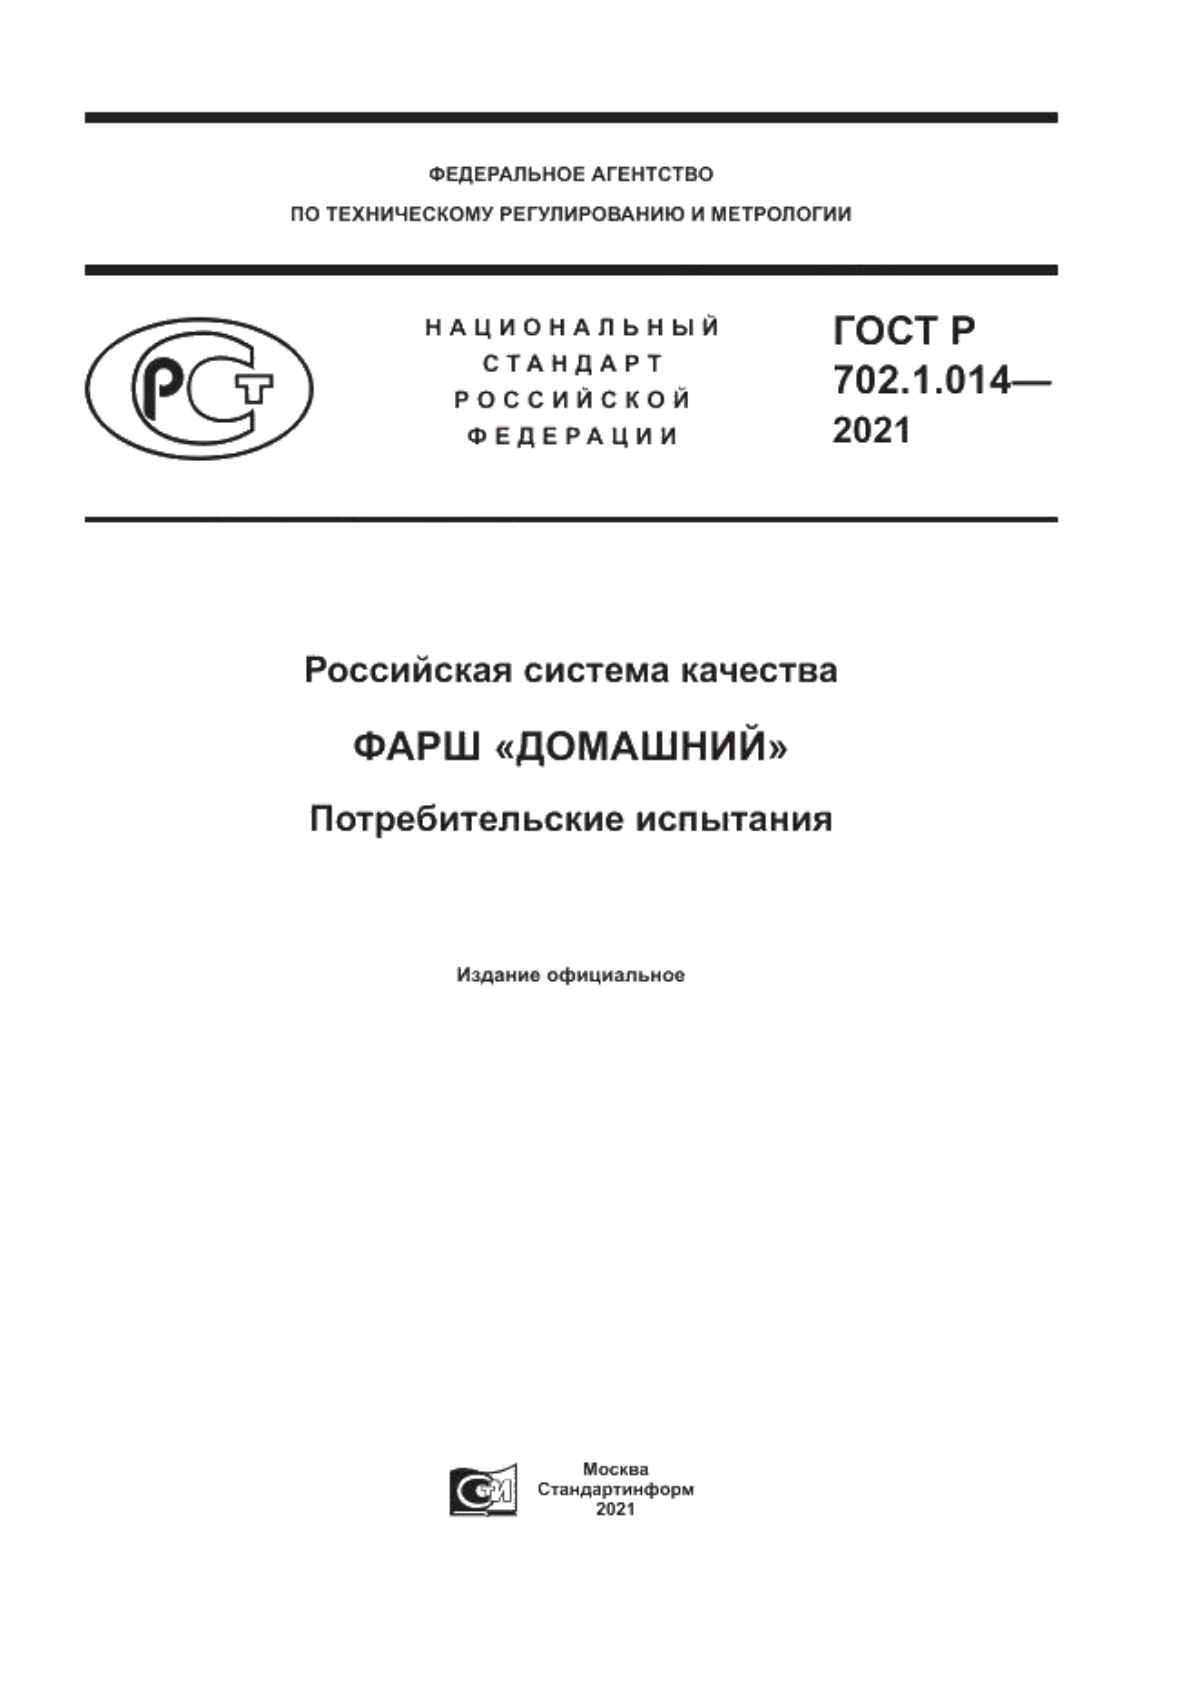 ГОСТ Р 702.1.014-2021 Российская система качества. Фарш «Домашний». Потребительские испытания